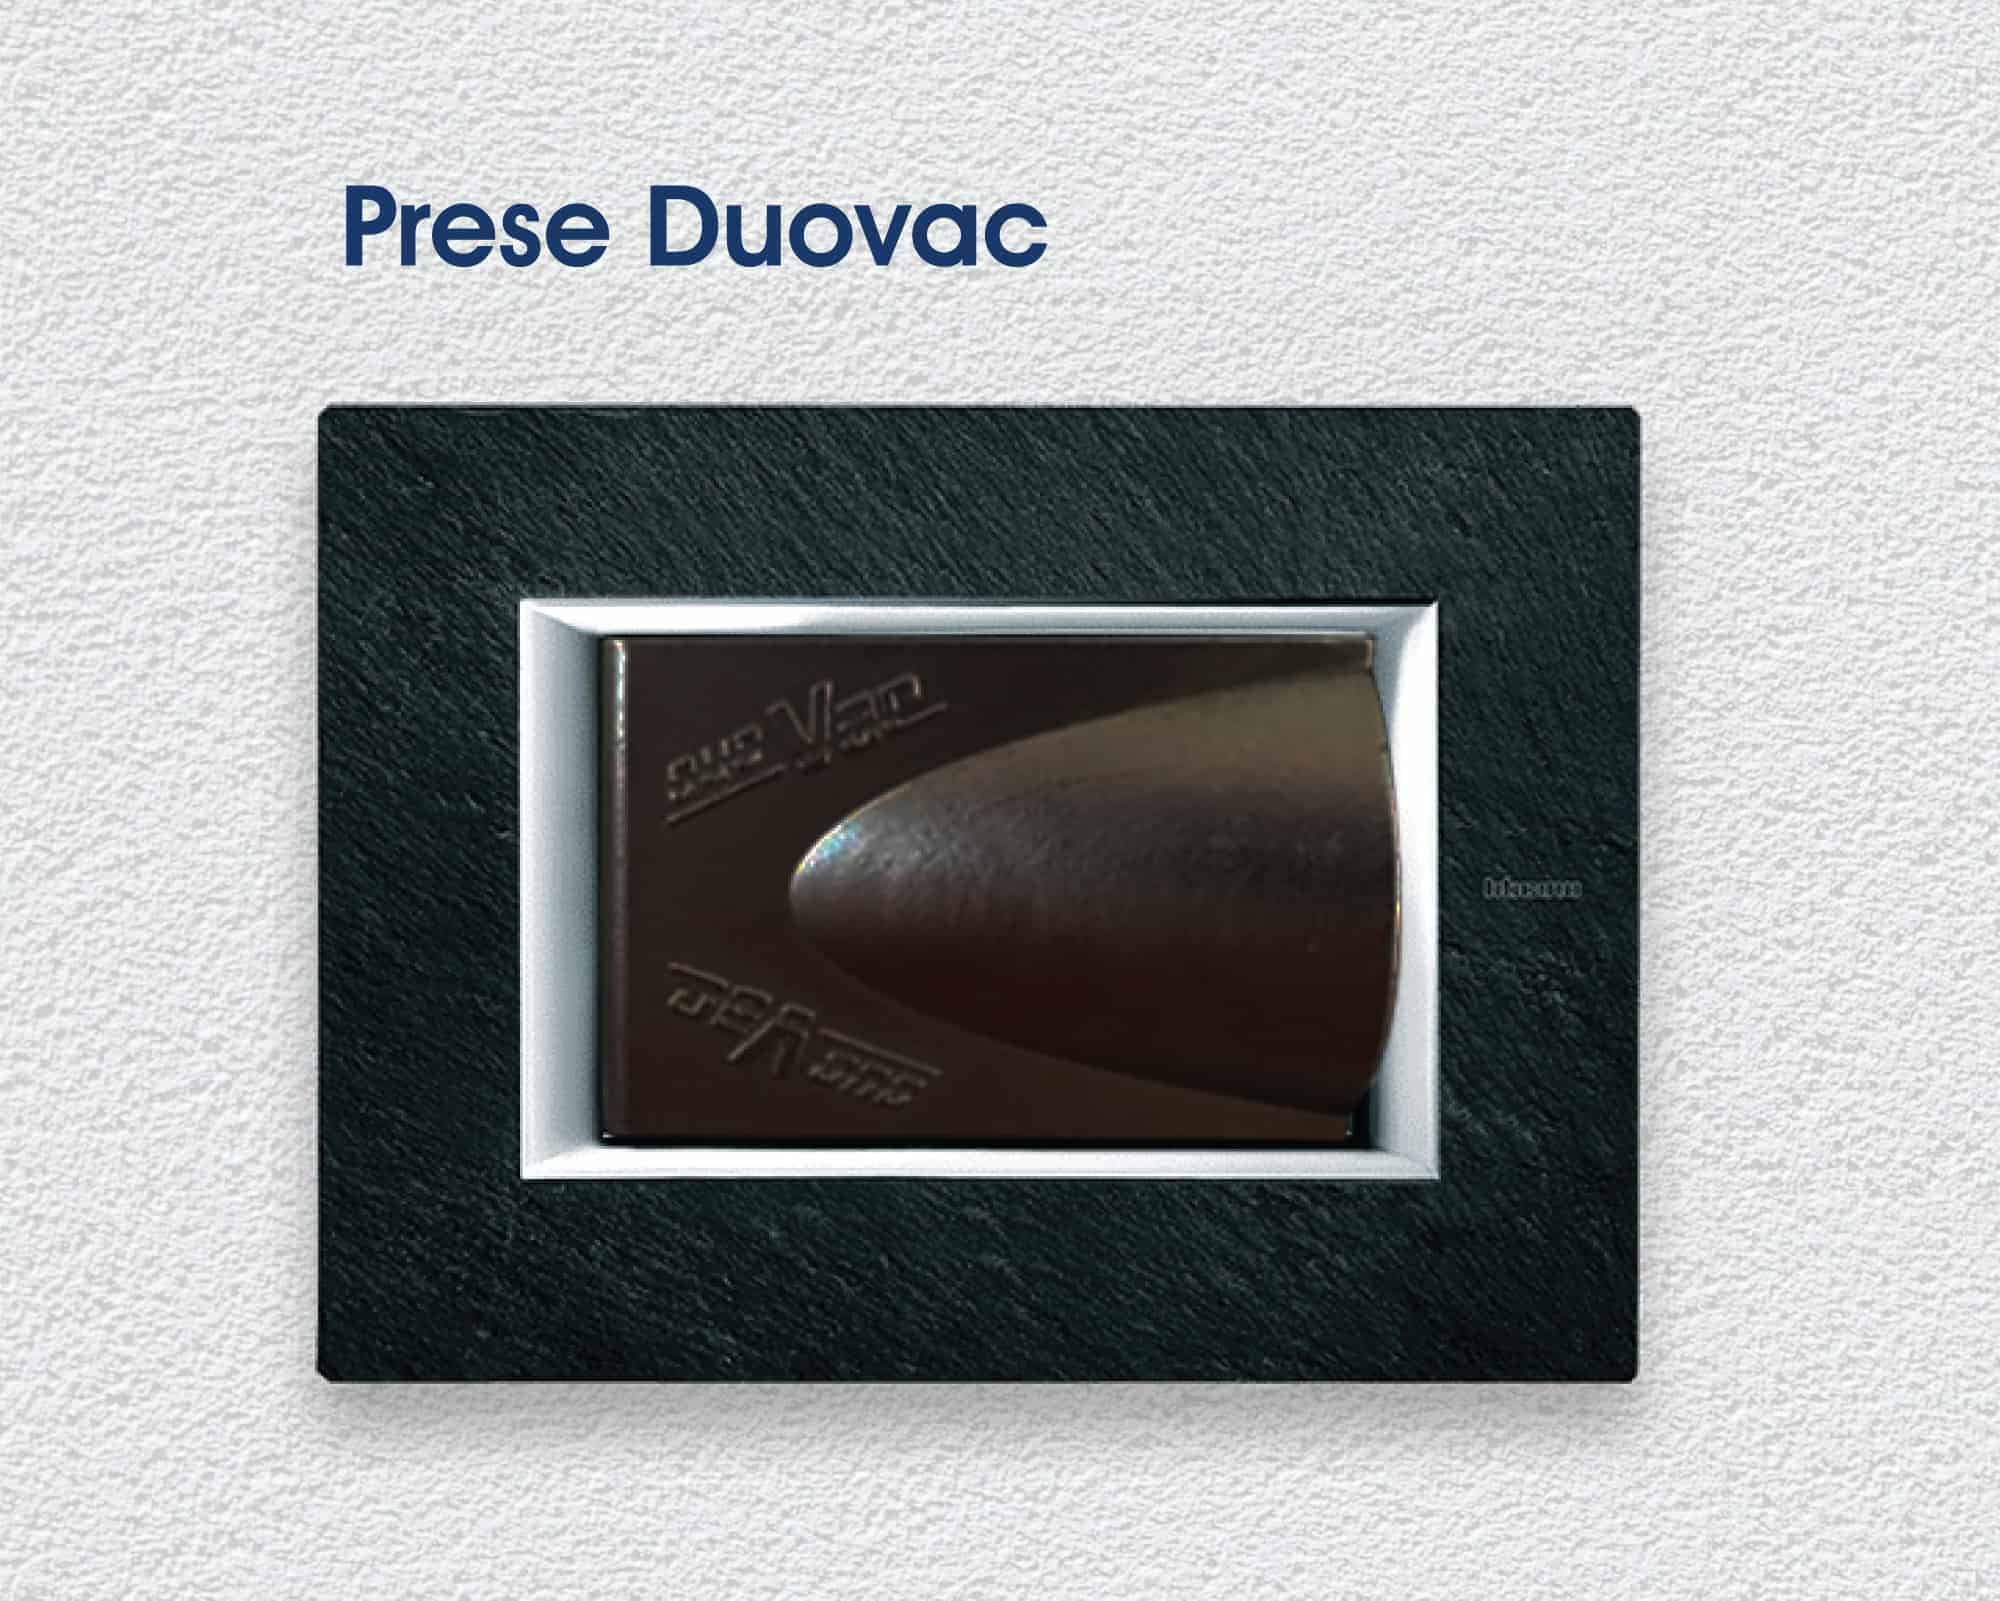 Questo tubo può essere usato su prese aspiranti Duovac